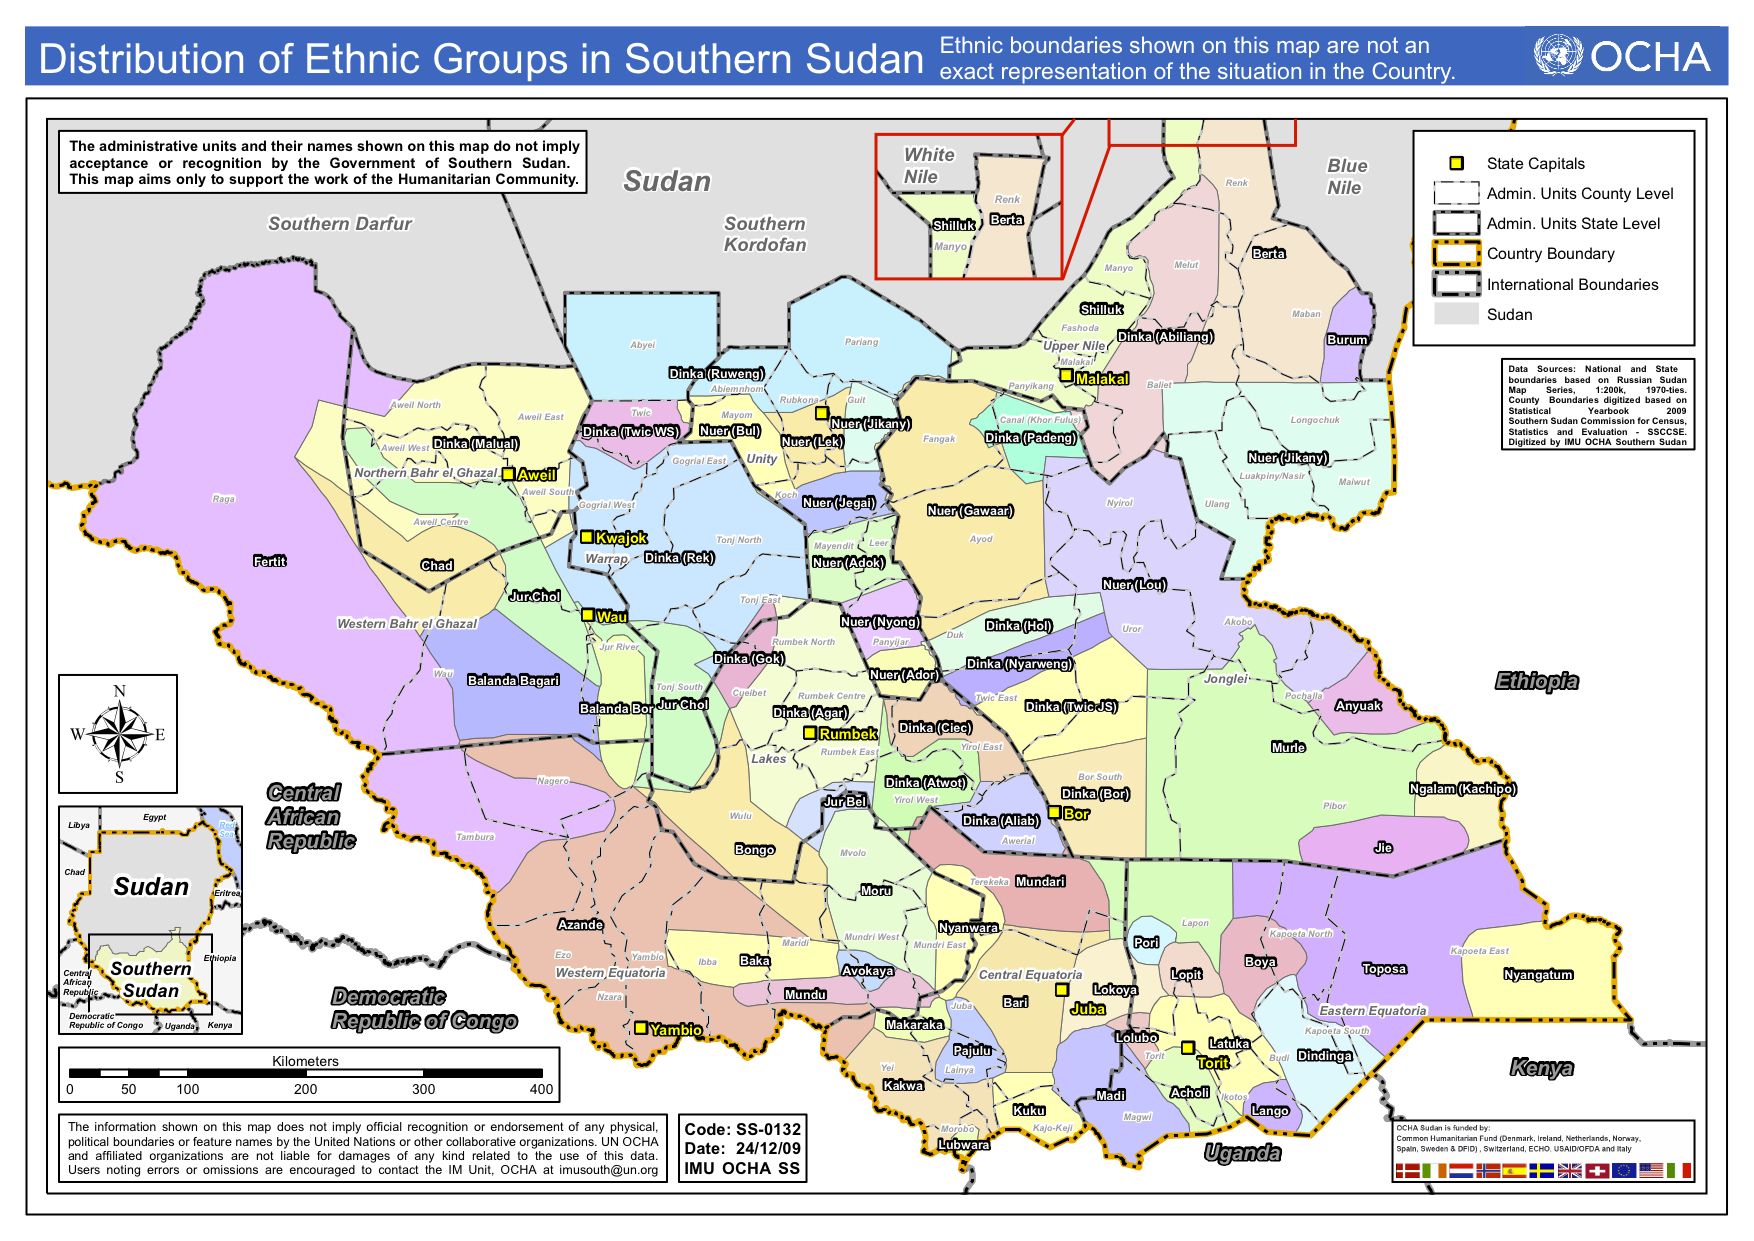 Boundaries of South Sudan's Tribal Groups